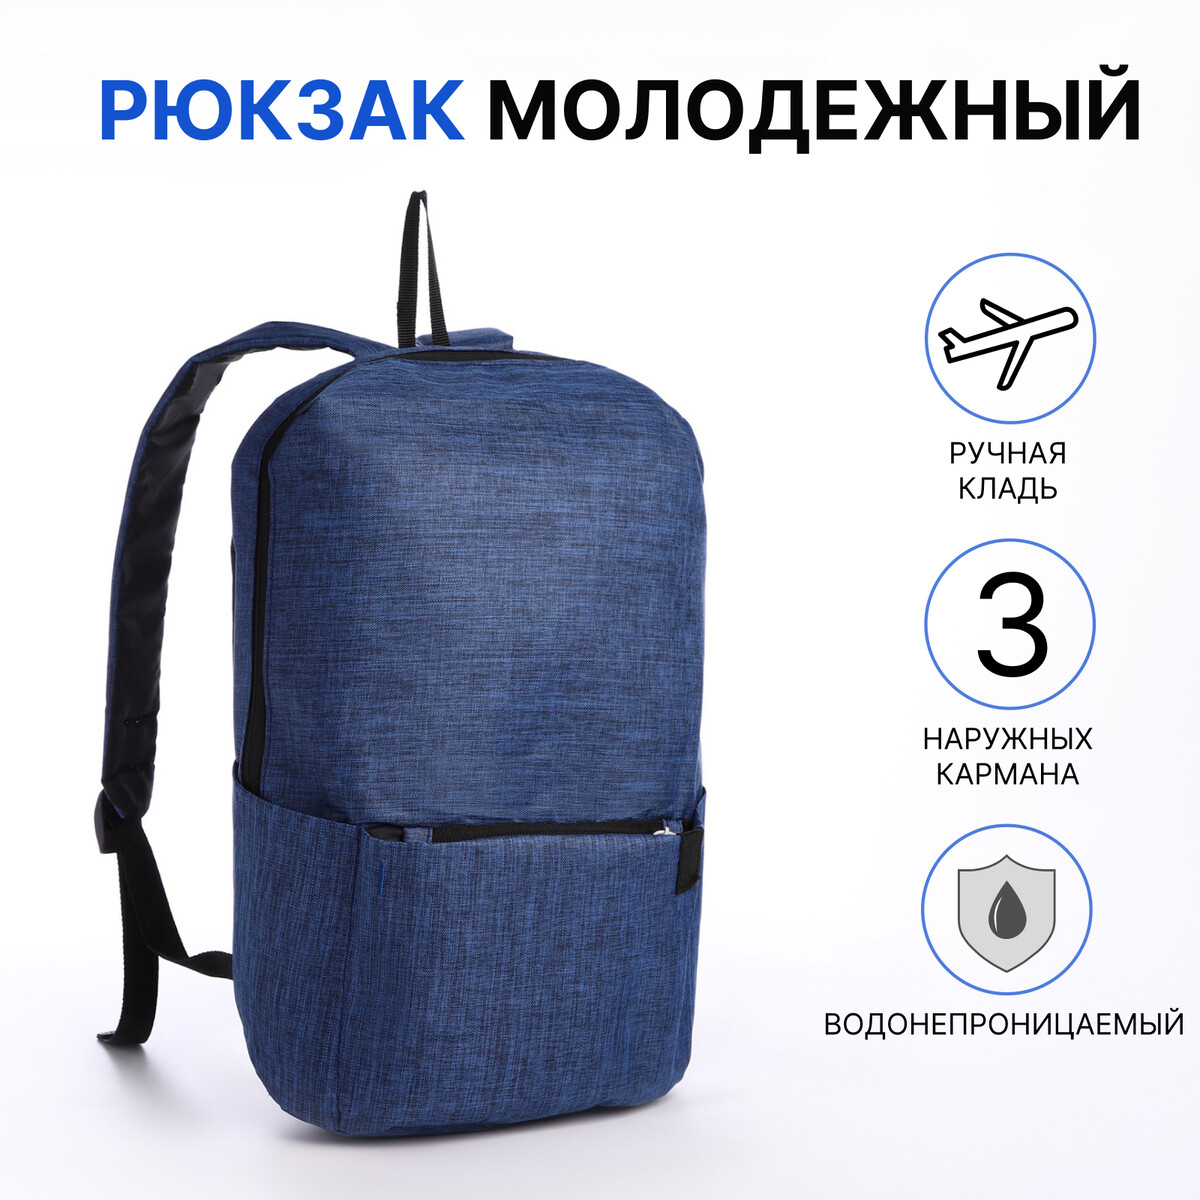 Рюкзак молодежный из текстиля на молнии, водонепроницаемый, наружный карман, цвет синий рюкзак молодежный из текстиля на молнии наружный карман синий